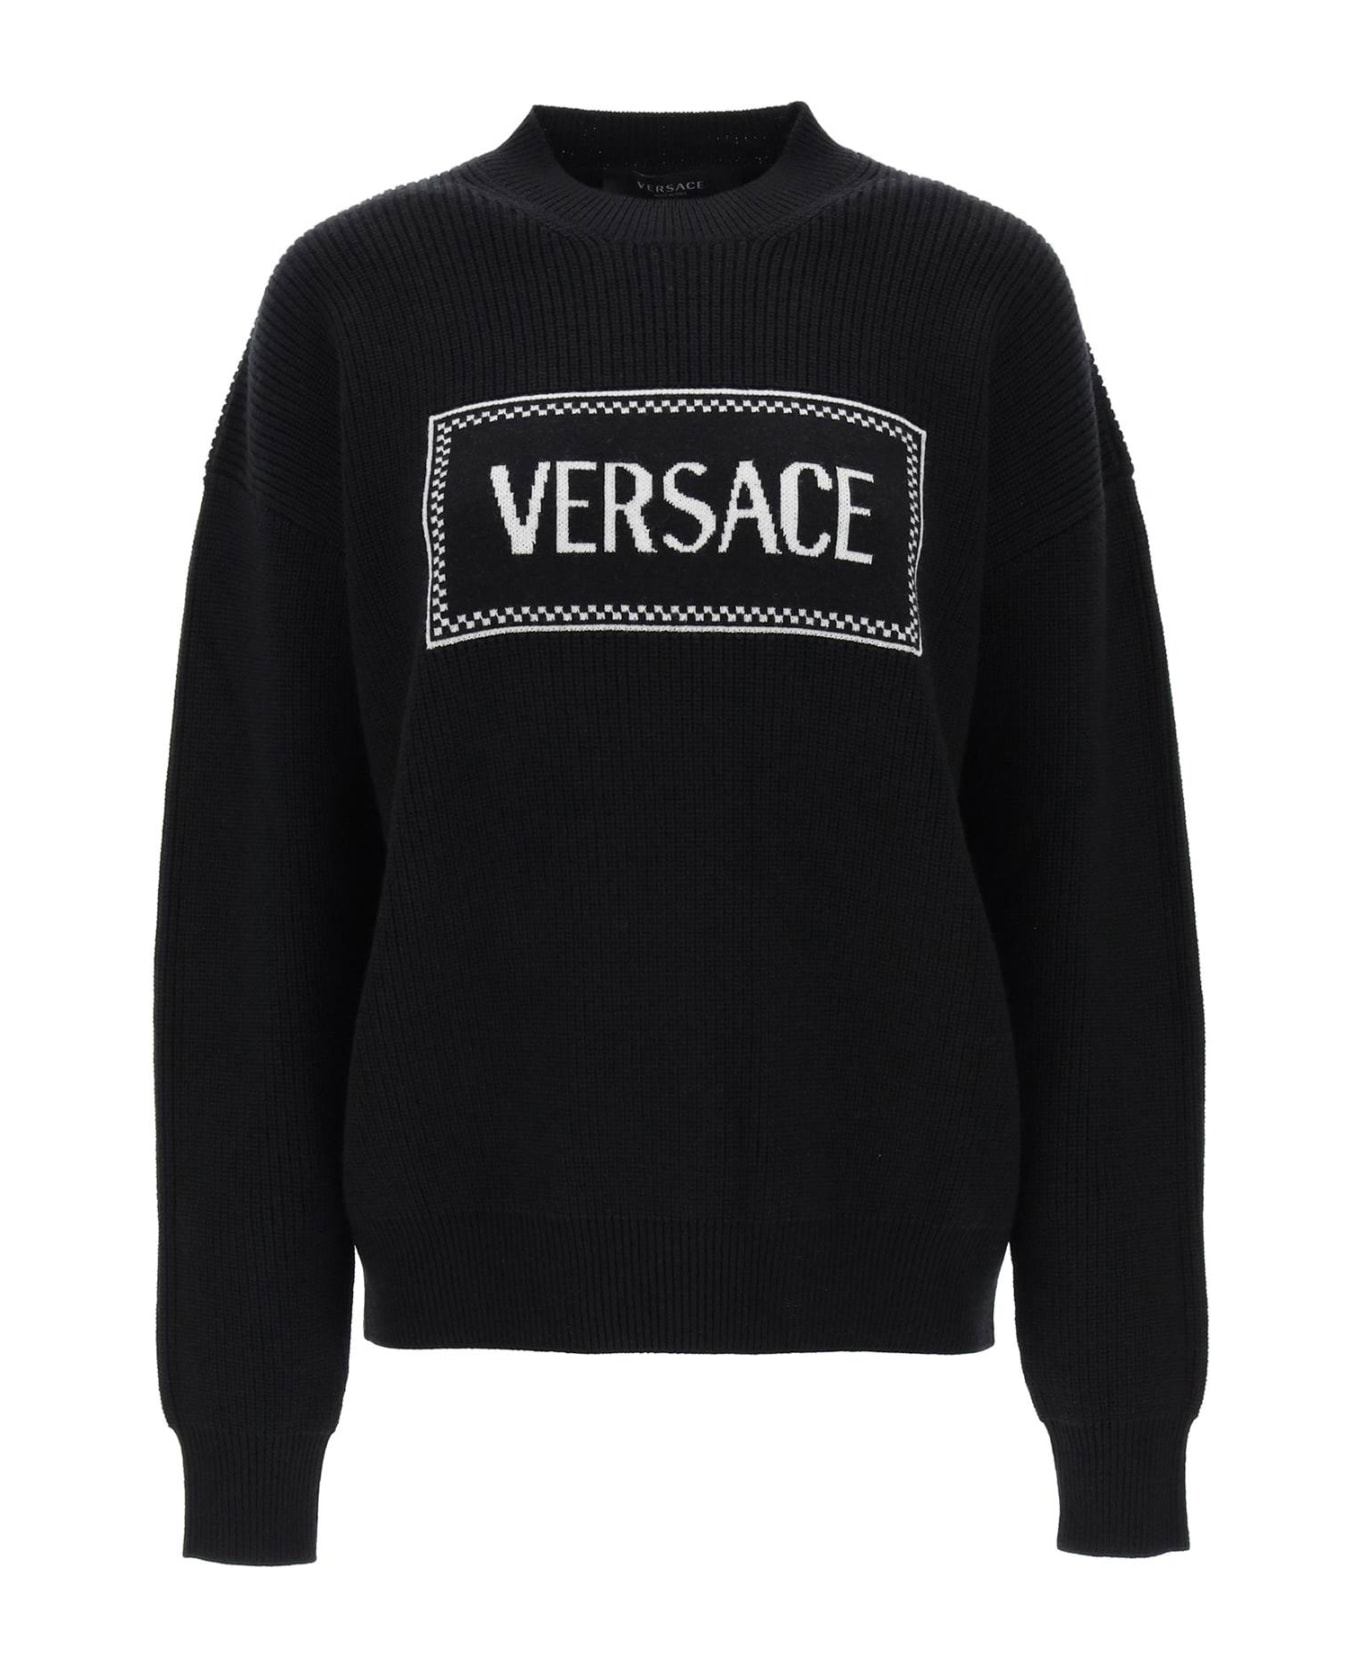 Versace Sweater - Nero+bianco ニットウェア